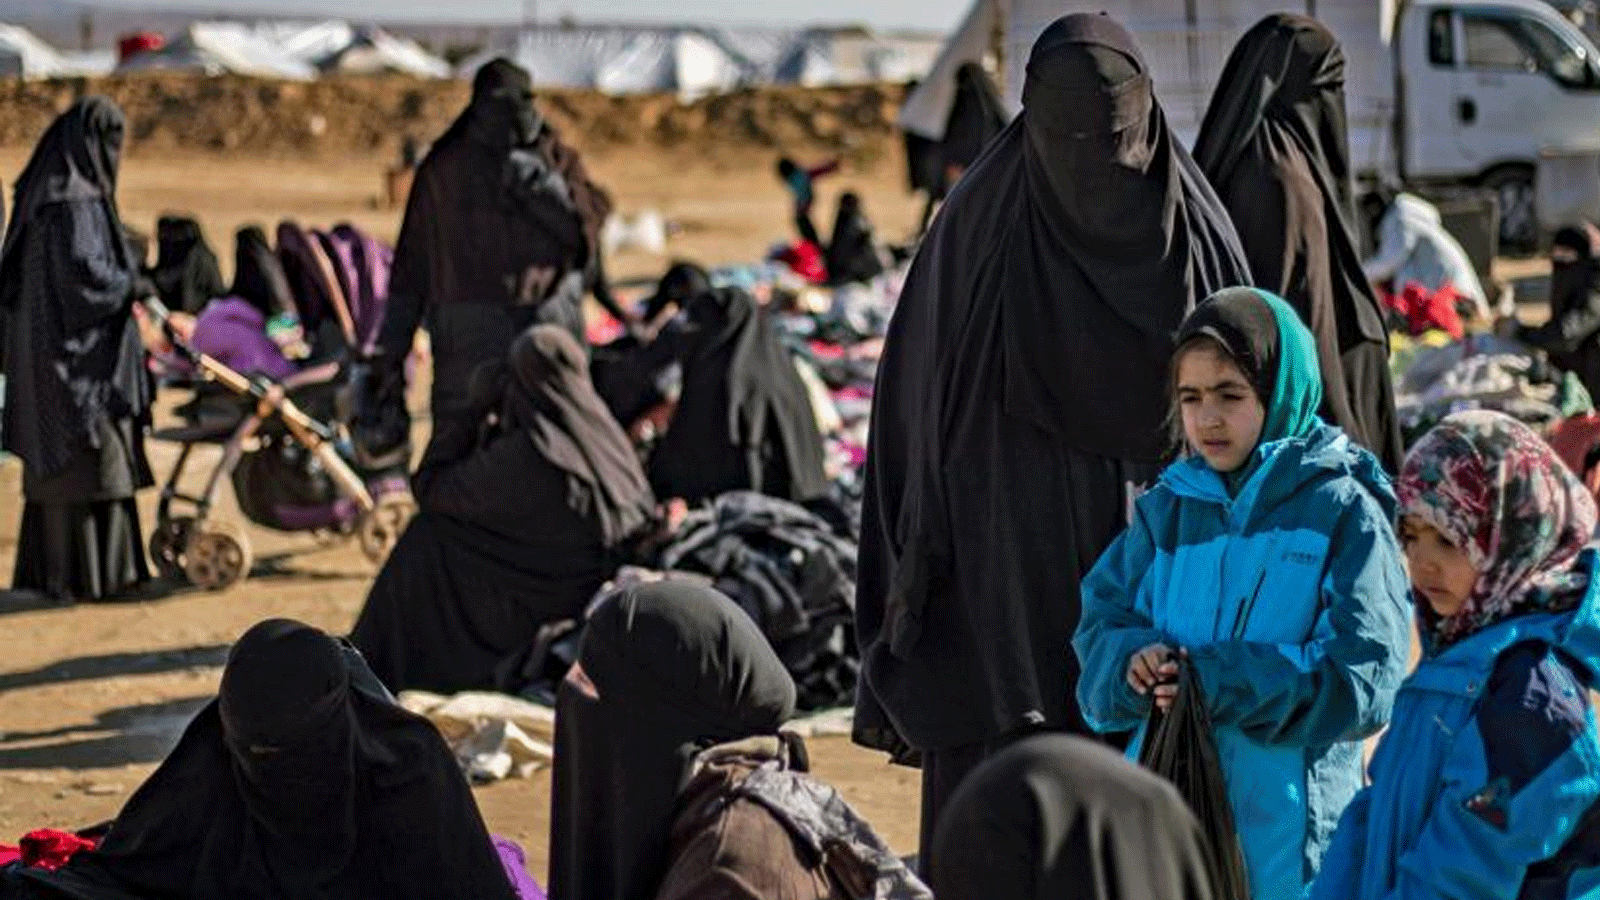 نساء وأطفال يجلسون في الهواء الطلق على الأرض في مخيم الهول الذي يديره الأكراد للنازحين في محافظة الحسكة في شمال شرق سوريا في 14 كانون الثاني / يناير 2020، حيث تُحتجز عائلات مقاتلي تنظيم الدولة الإسلامية.